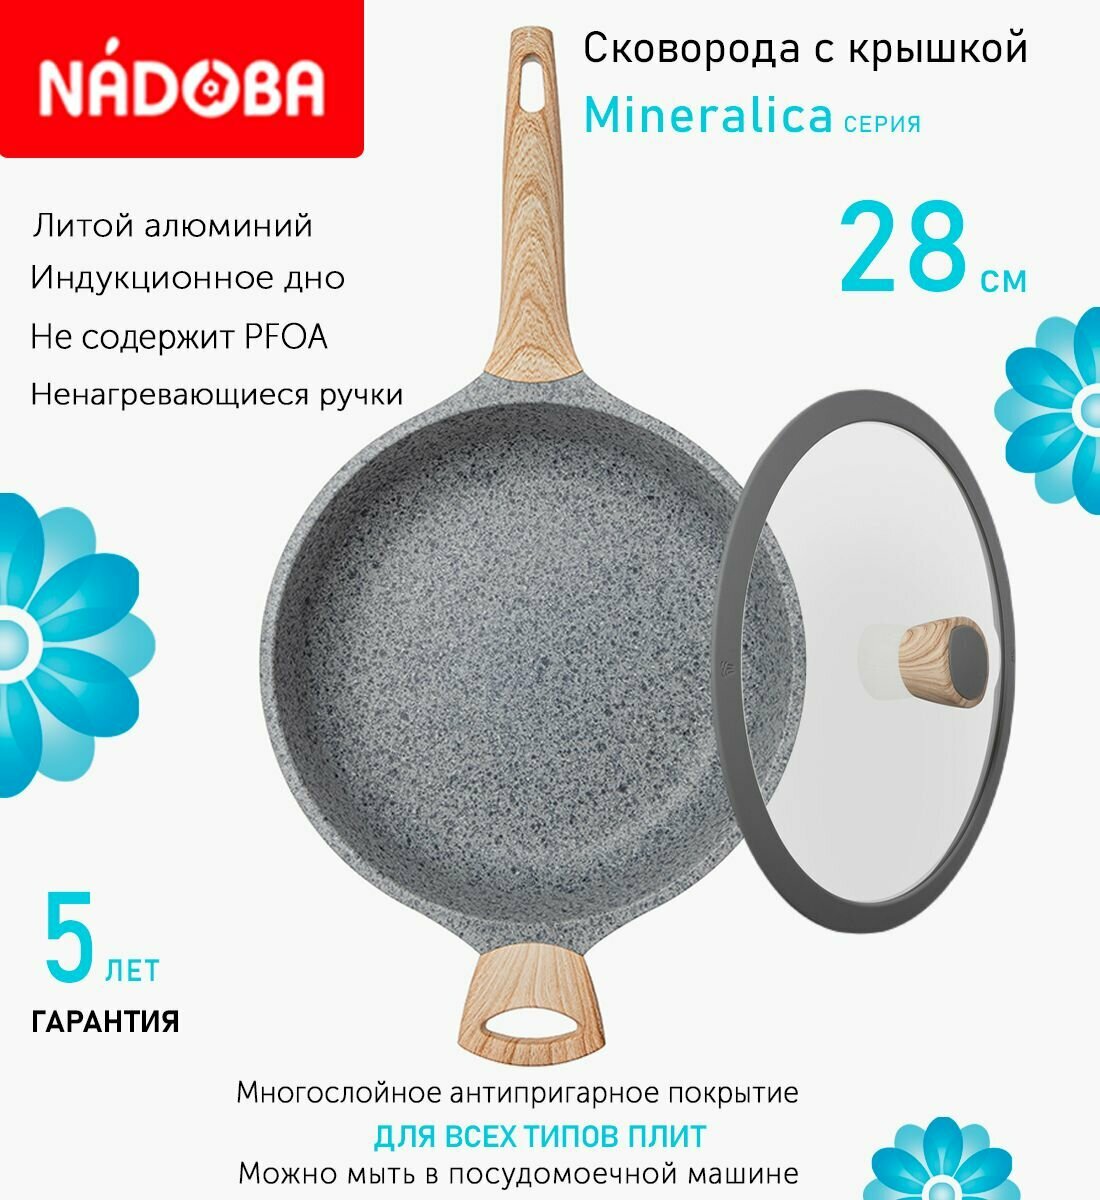 Сковорода глубокая с крышкой NADOBA 28см, серия "Mineralica" (арт. 728426/751211)